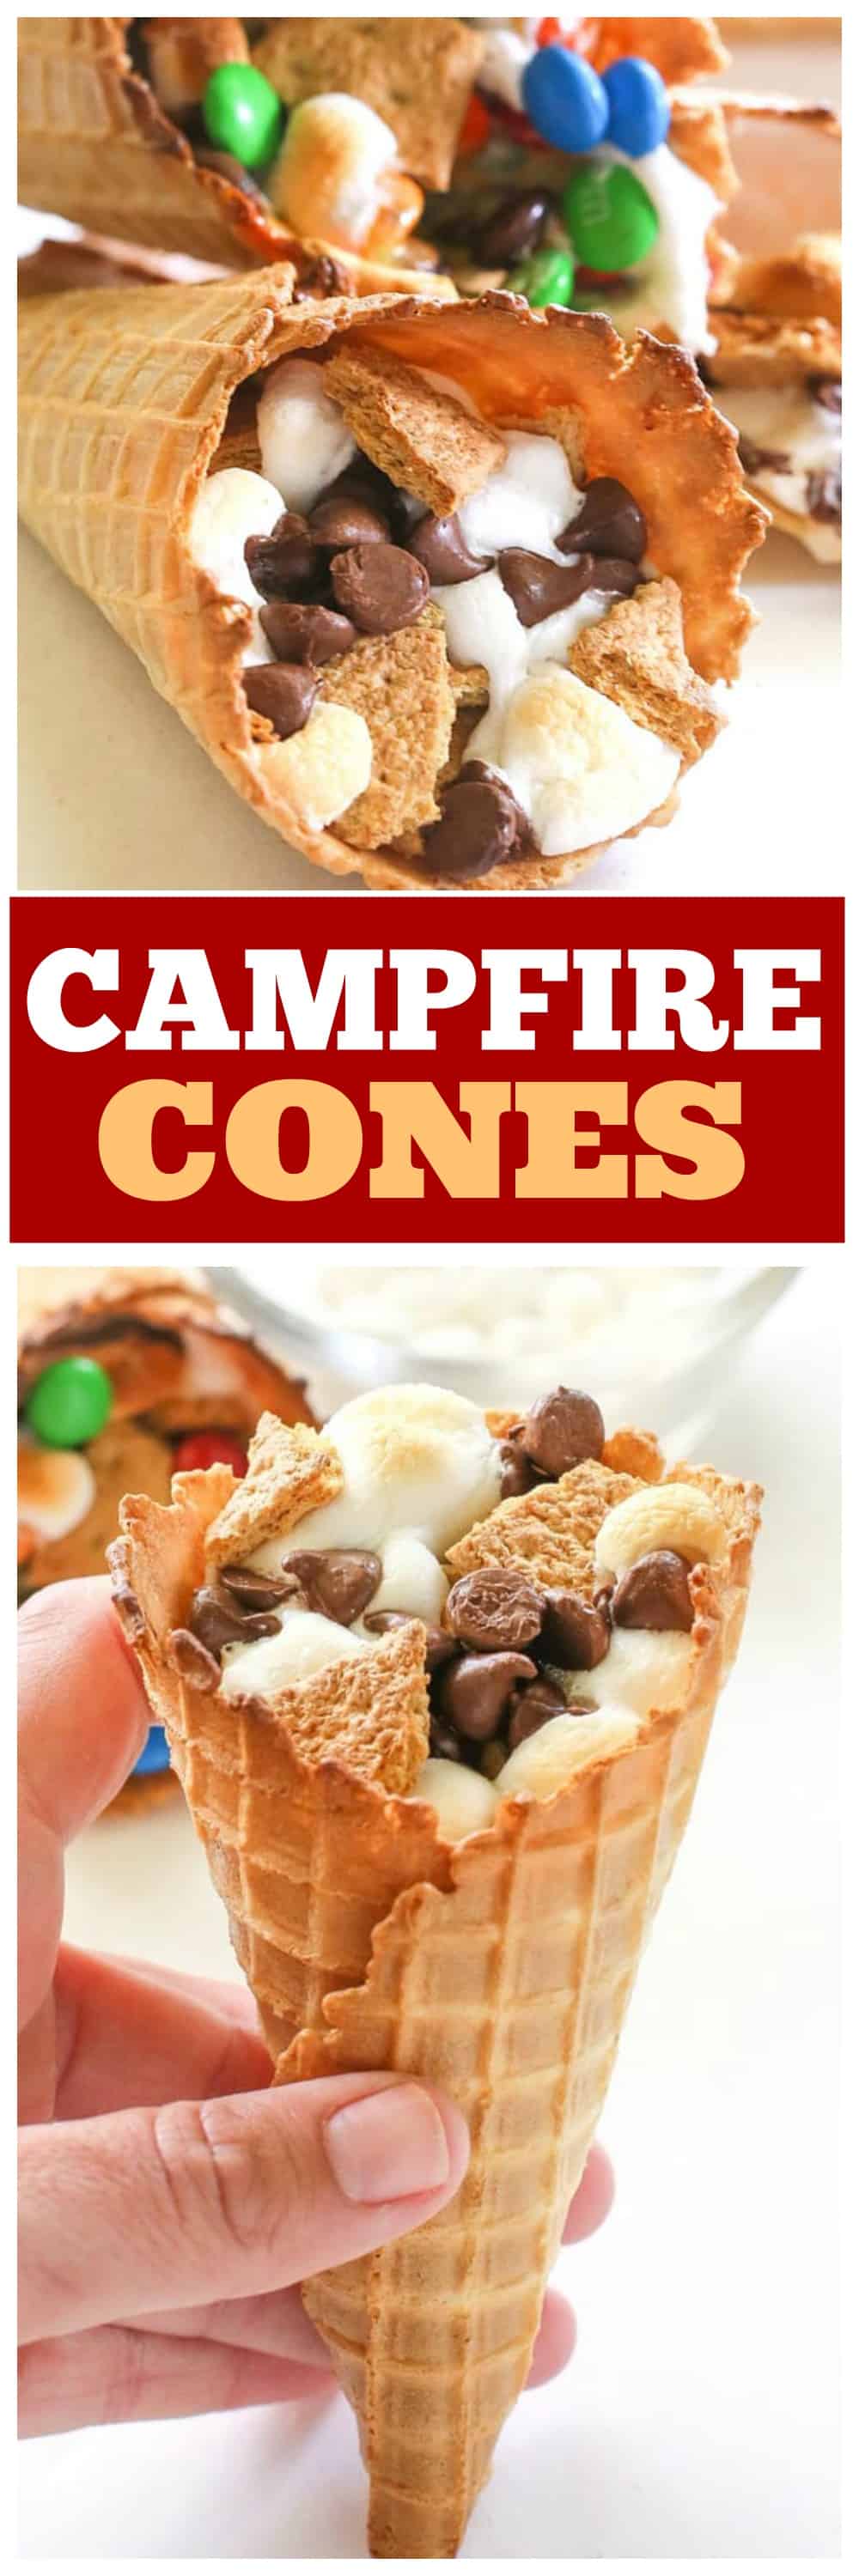 Cones de fogueira - Se você não quer lidar com alguém furando o olho, faça seus s'mores em um cone de waffle, embrulhe em papel alumínio e jogue na fogueira até derreter!  #fogueira #cones #smores #sobremesa